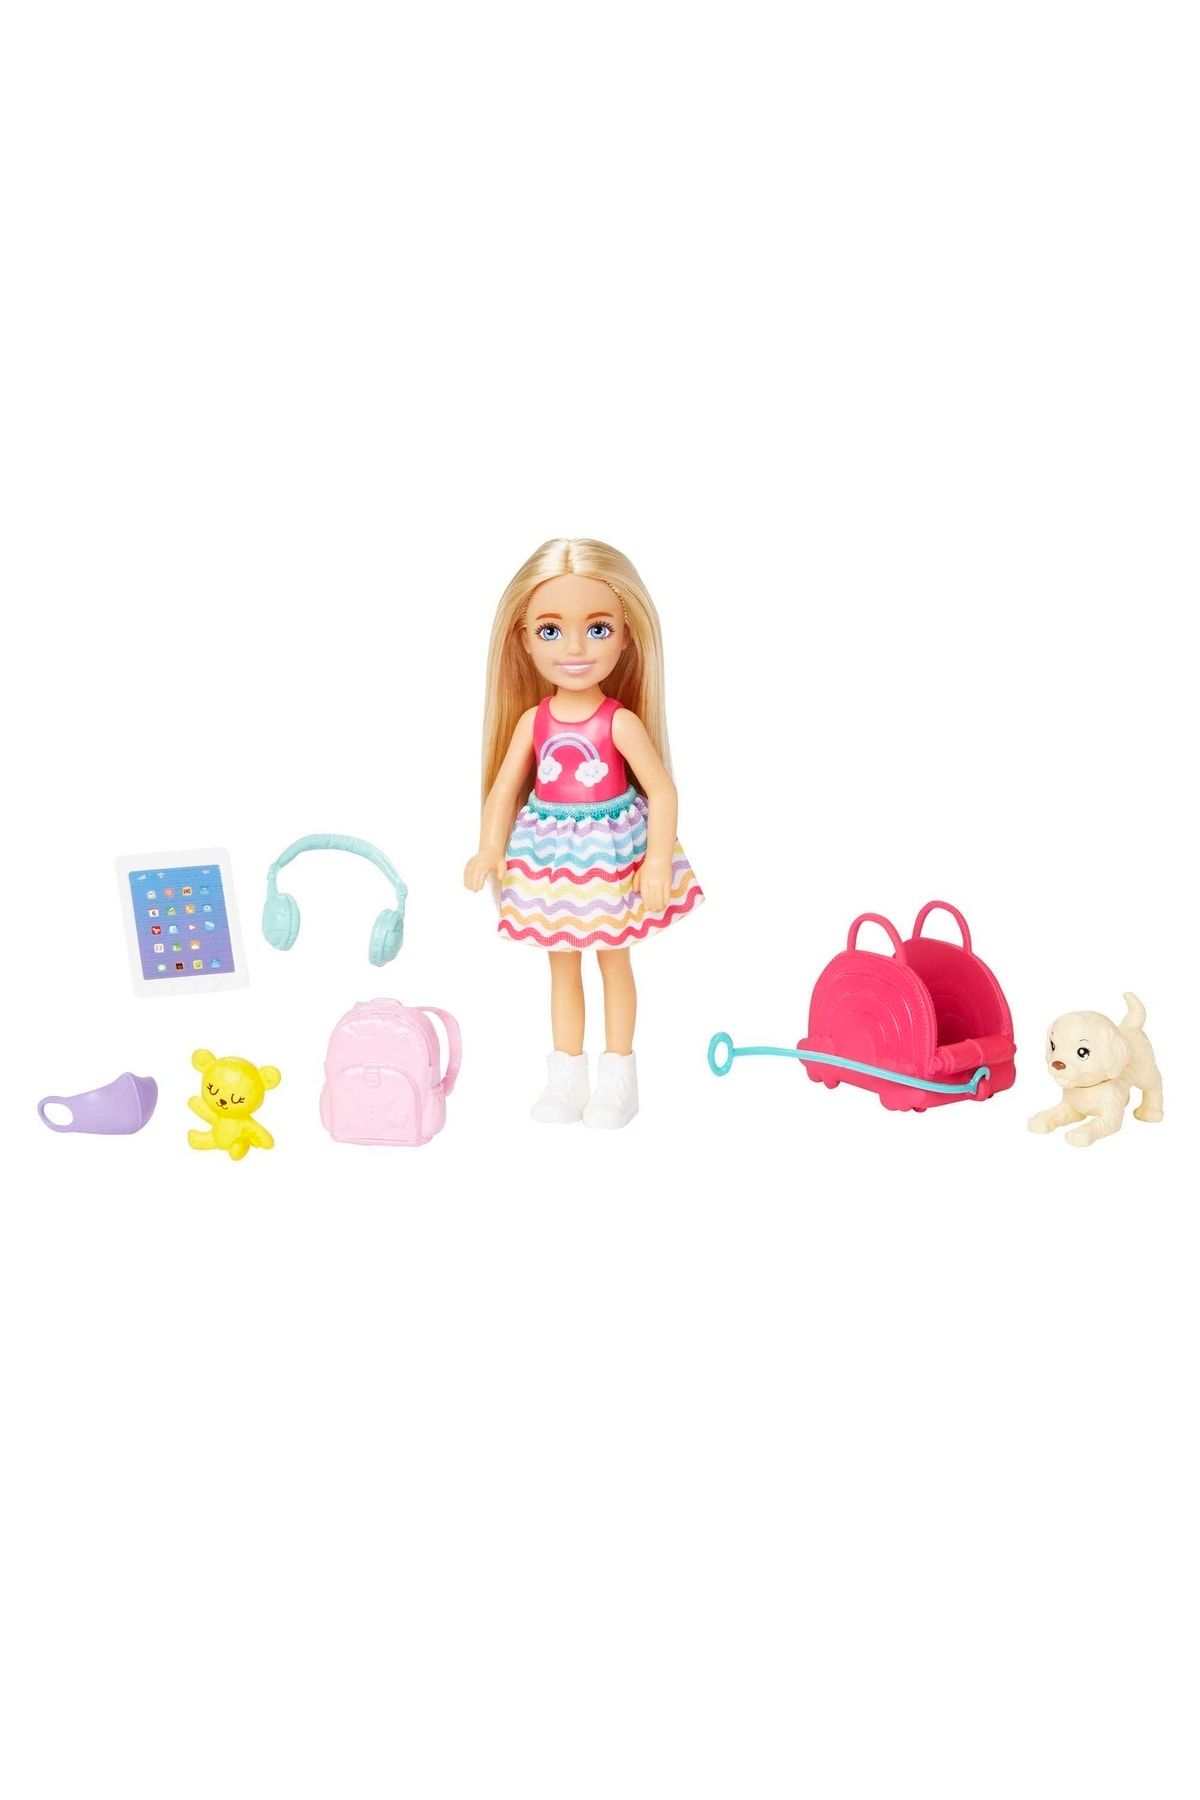 Barbie Seyahatte Chelsea Bebek ve Aksesuarları